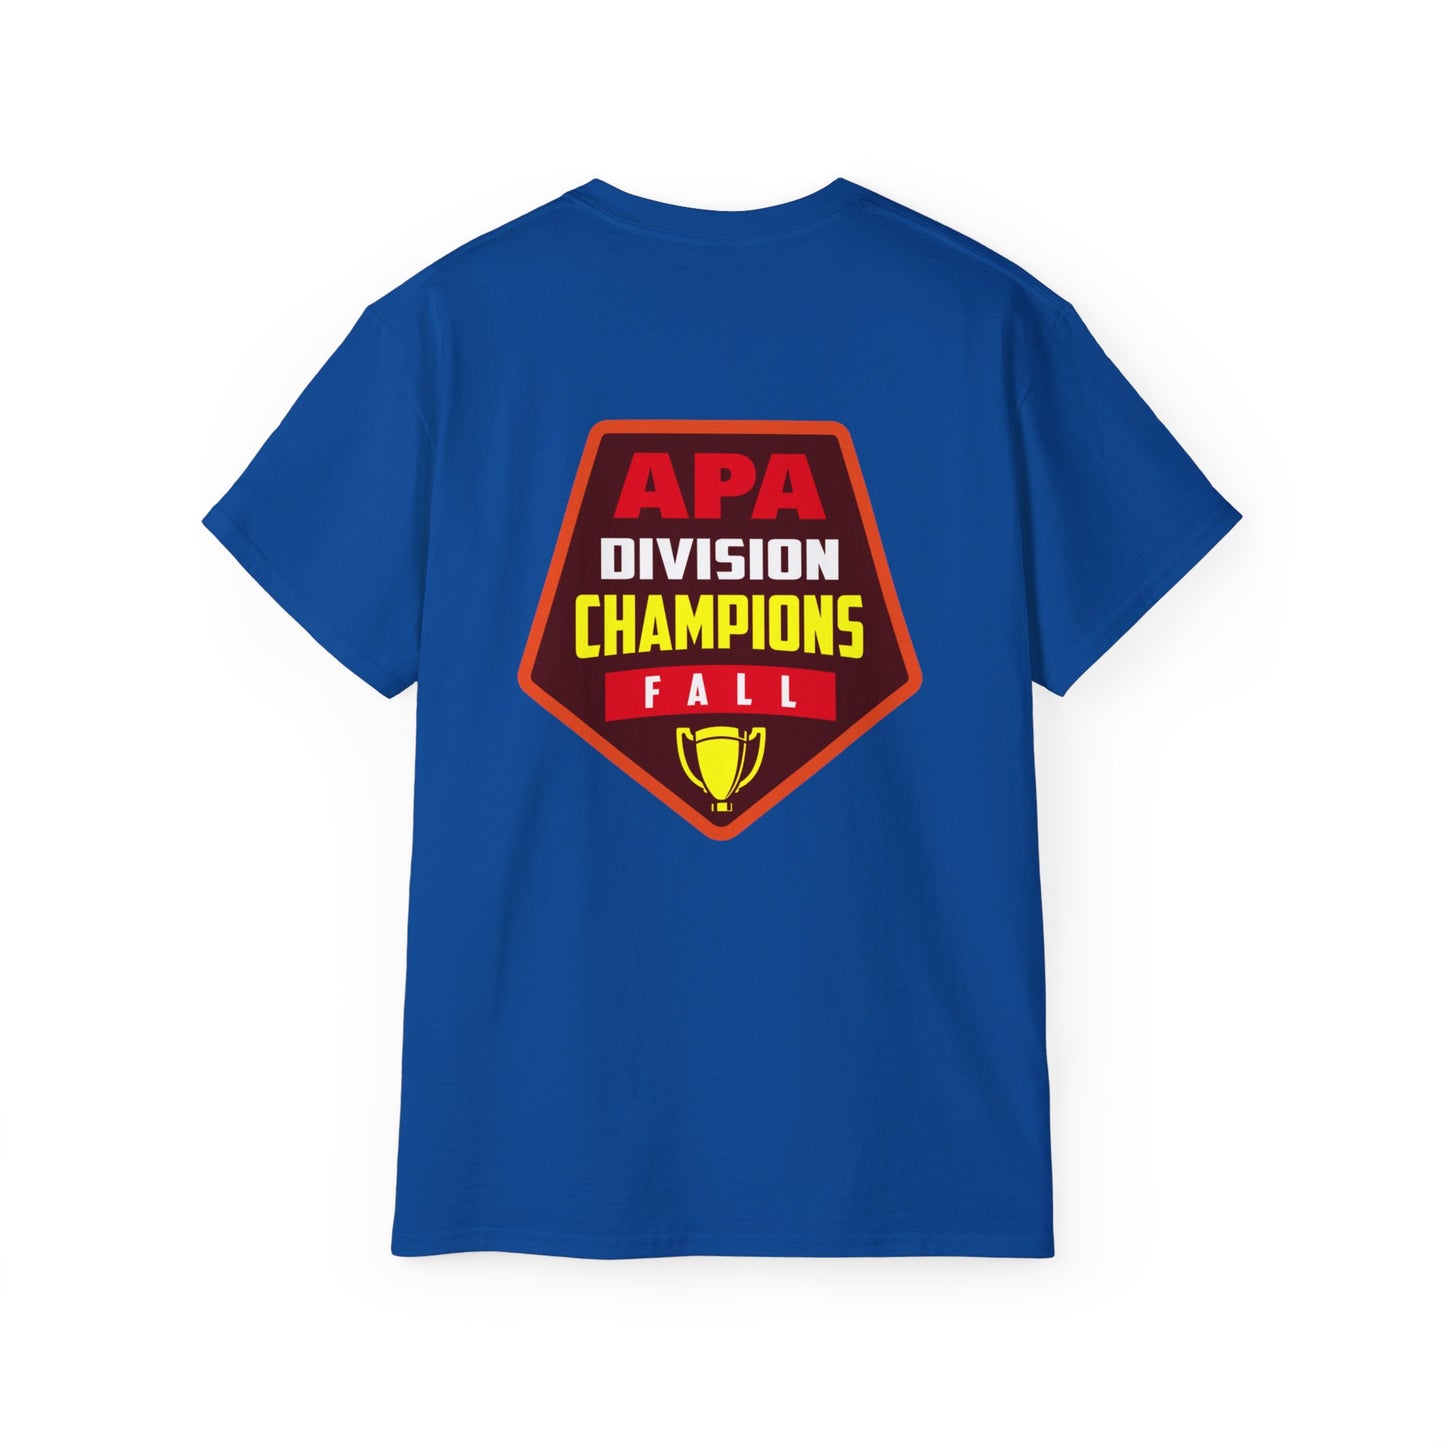 Division Champions Fall T-Shirt